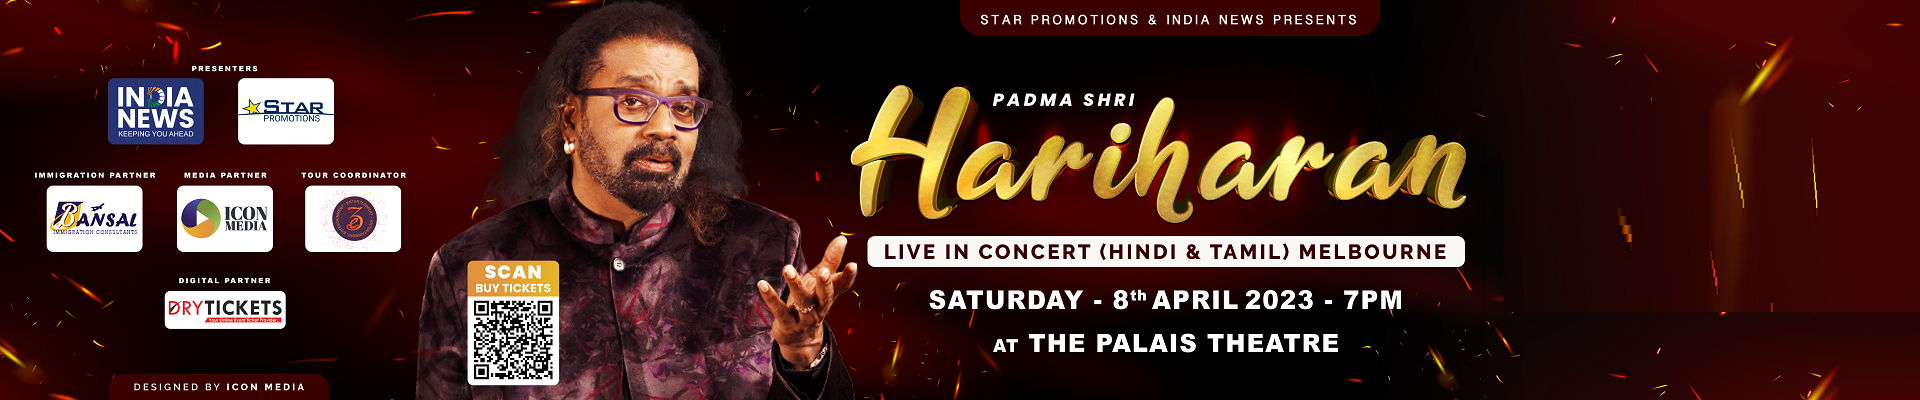 Padma Shri Hariharan Live In Concert (Hindi & Tamil) In Melbourne